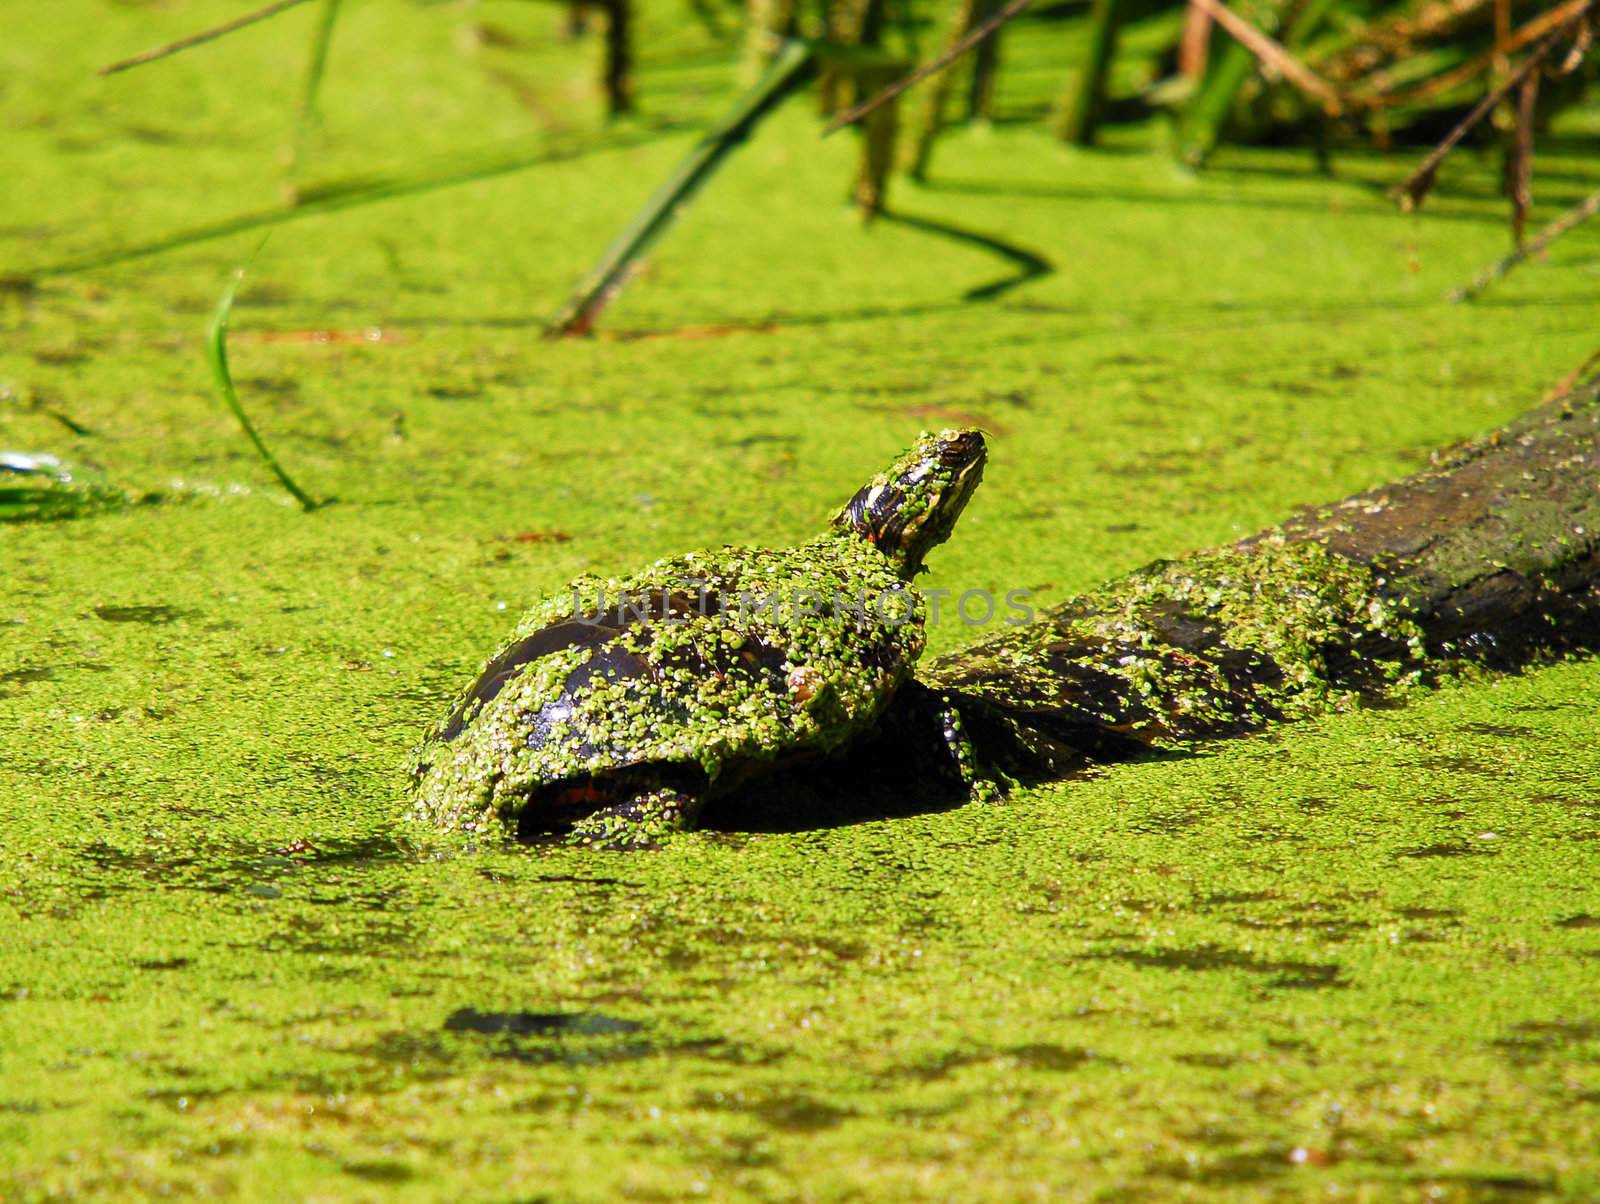 Turtle taking a sunbath on a log